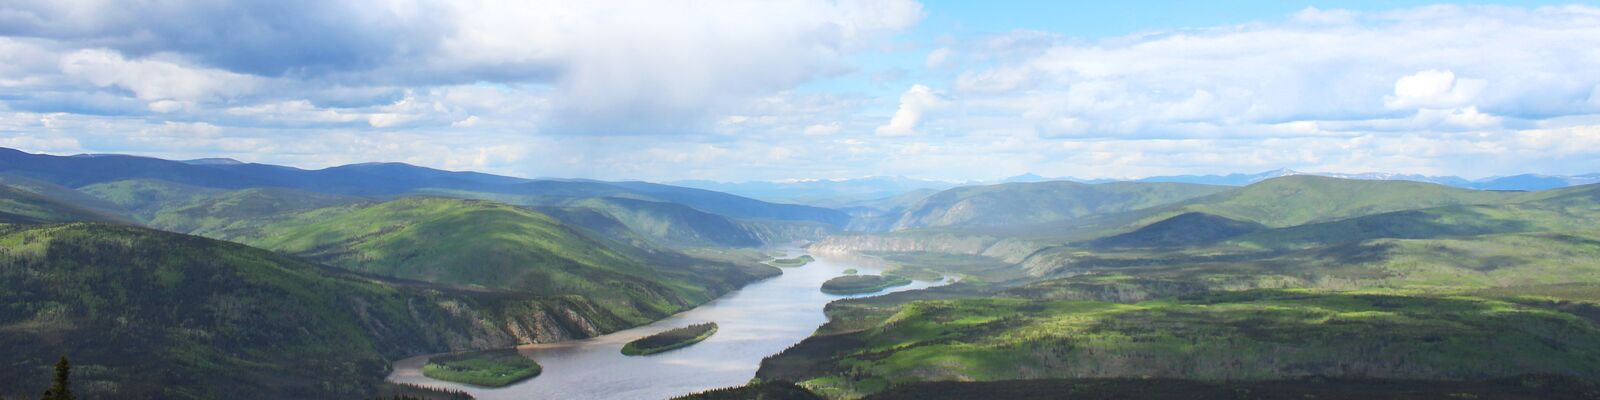 Ausblick vom Midnight Dome auf den Yukon River